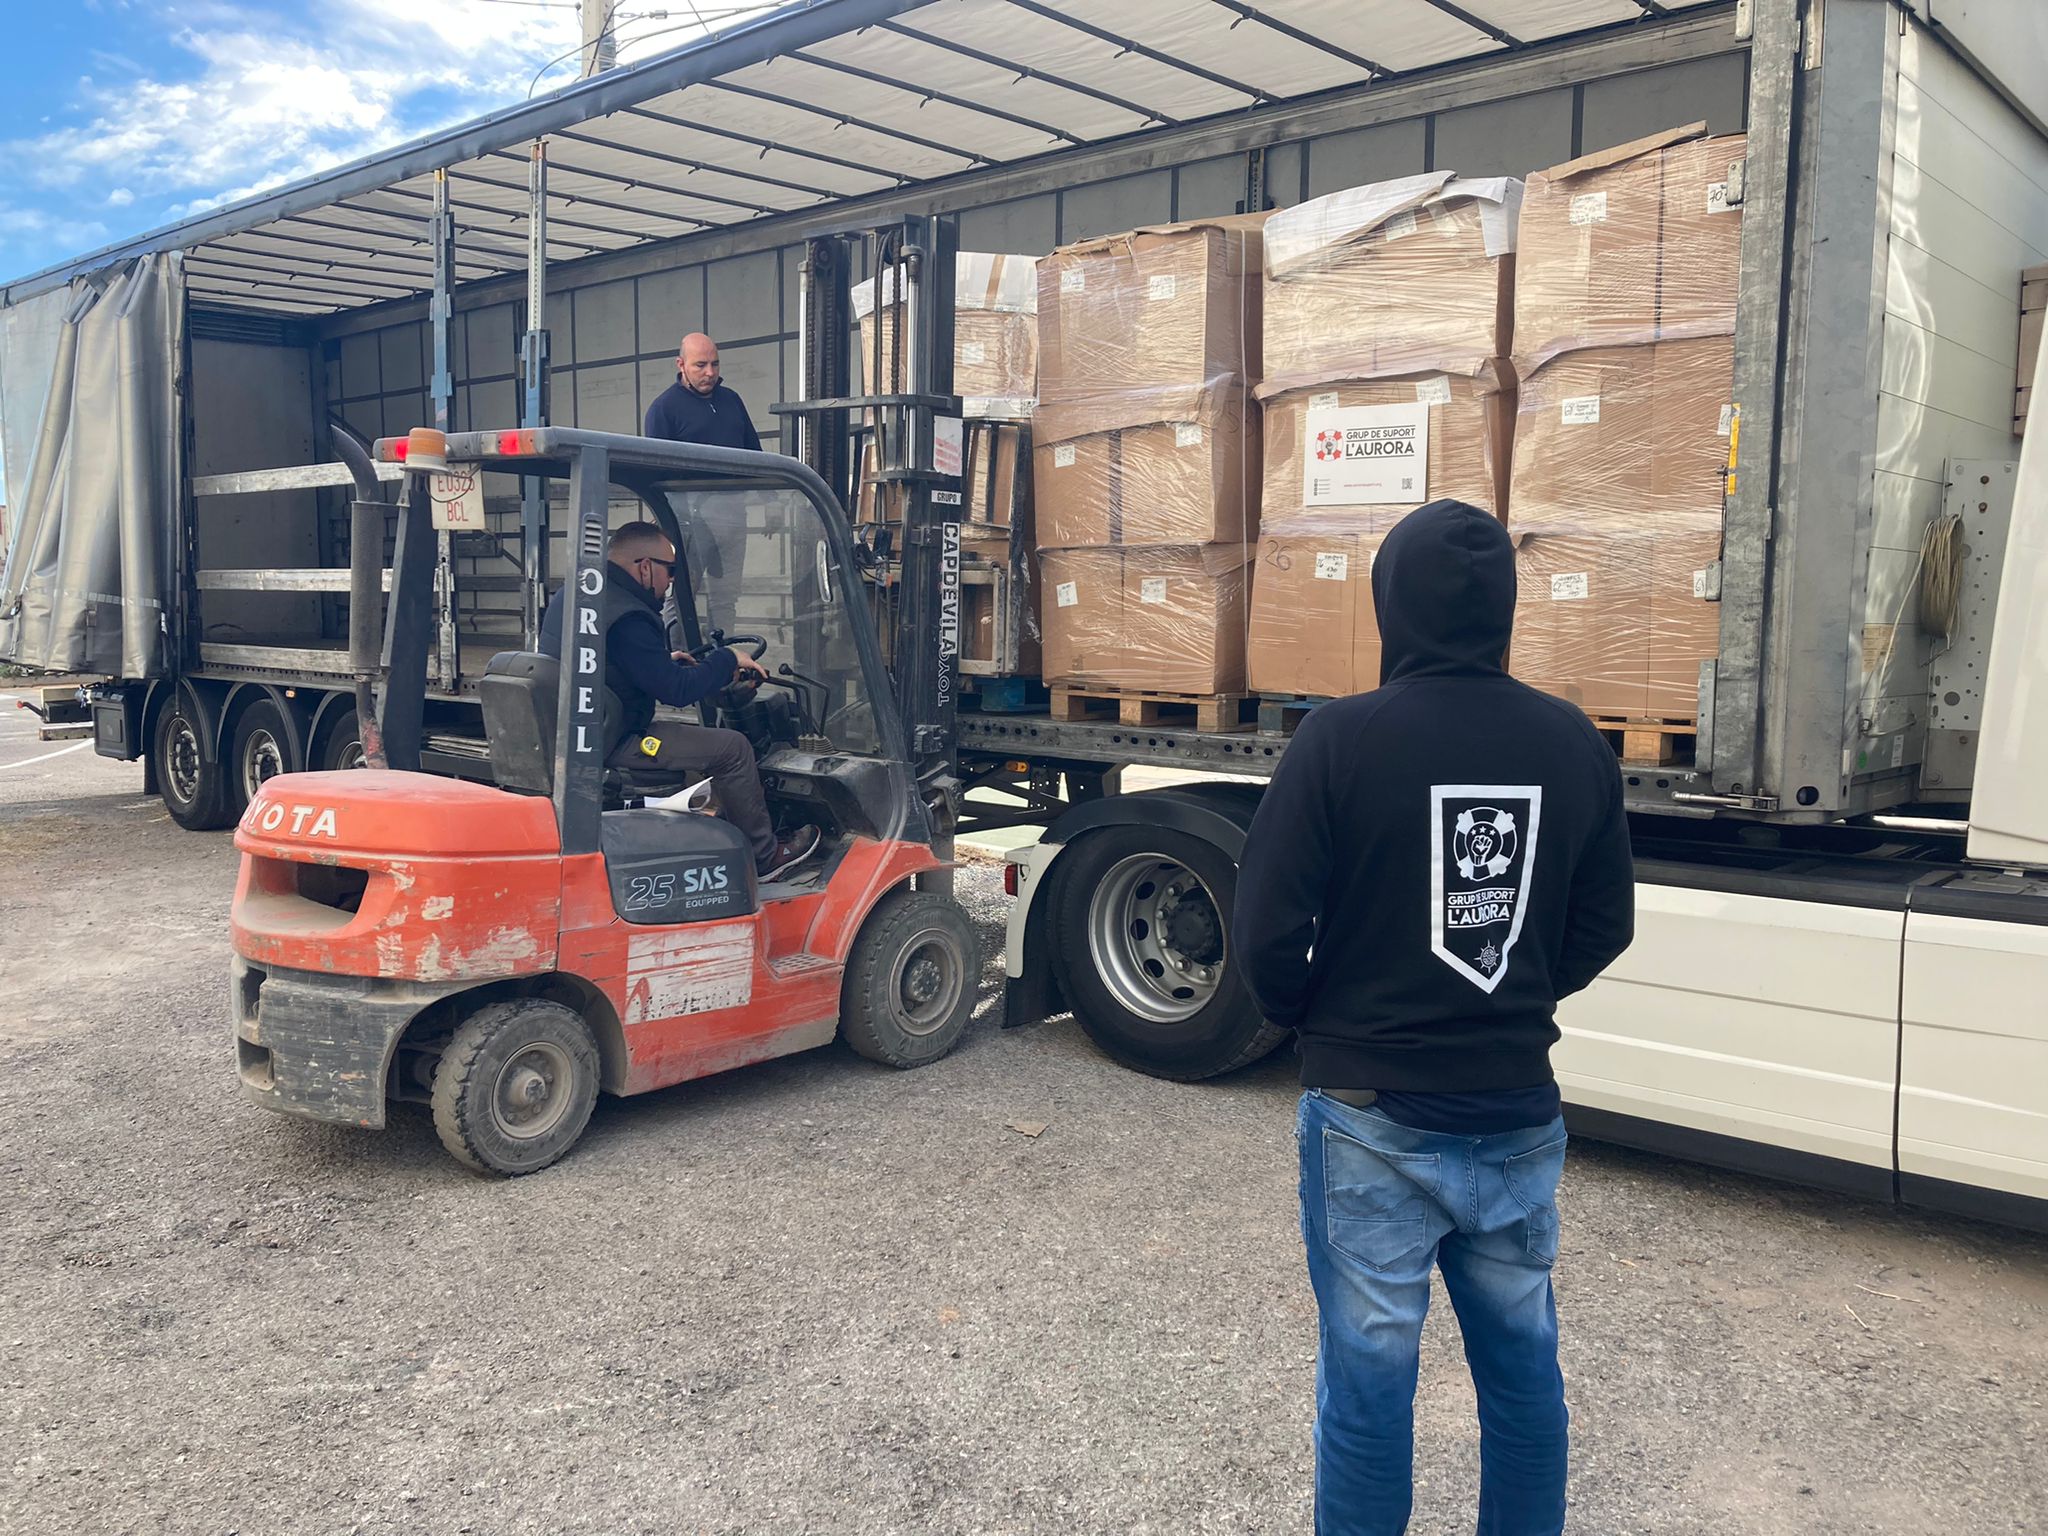 L’Aurora Grup de Suport envía 10 pallets de ropa y mantas a las fronteras de Serbia y Grecia